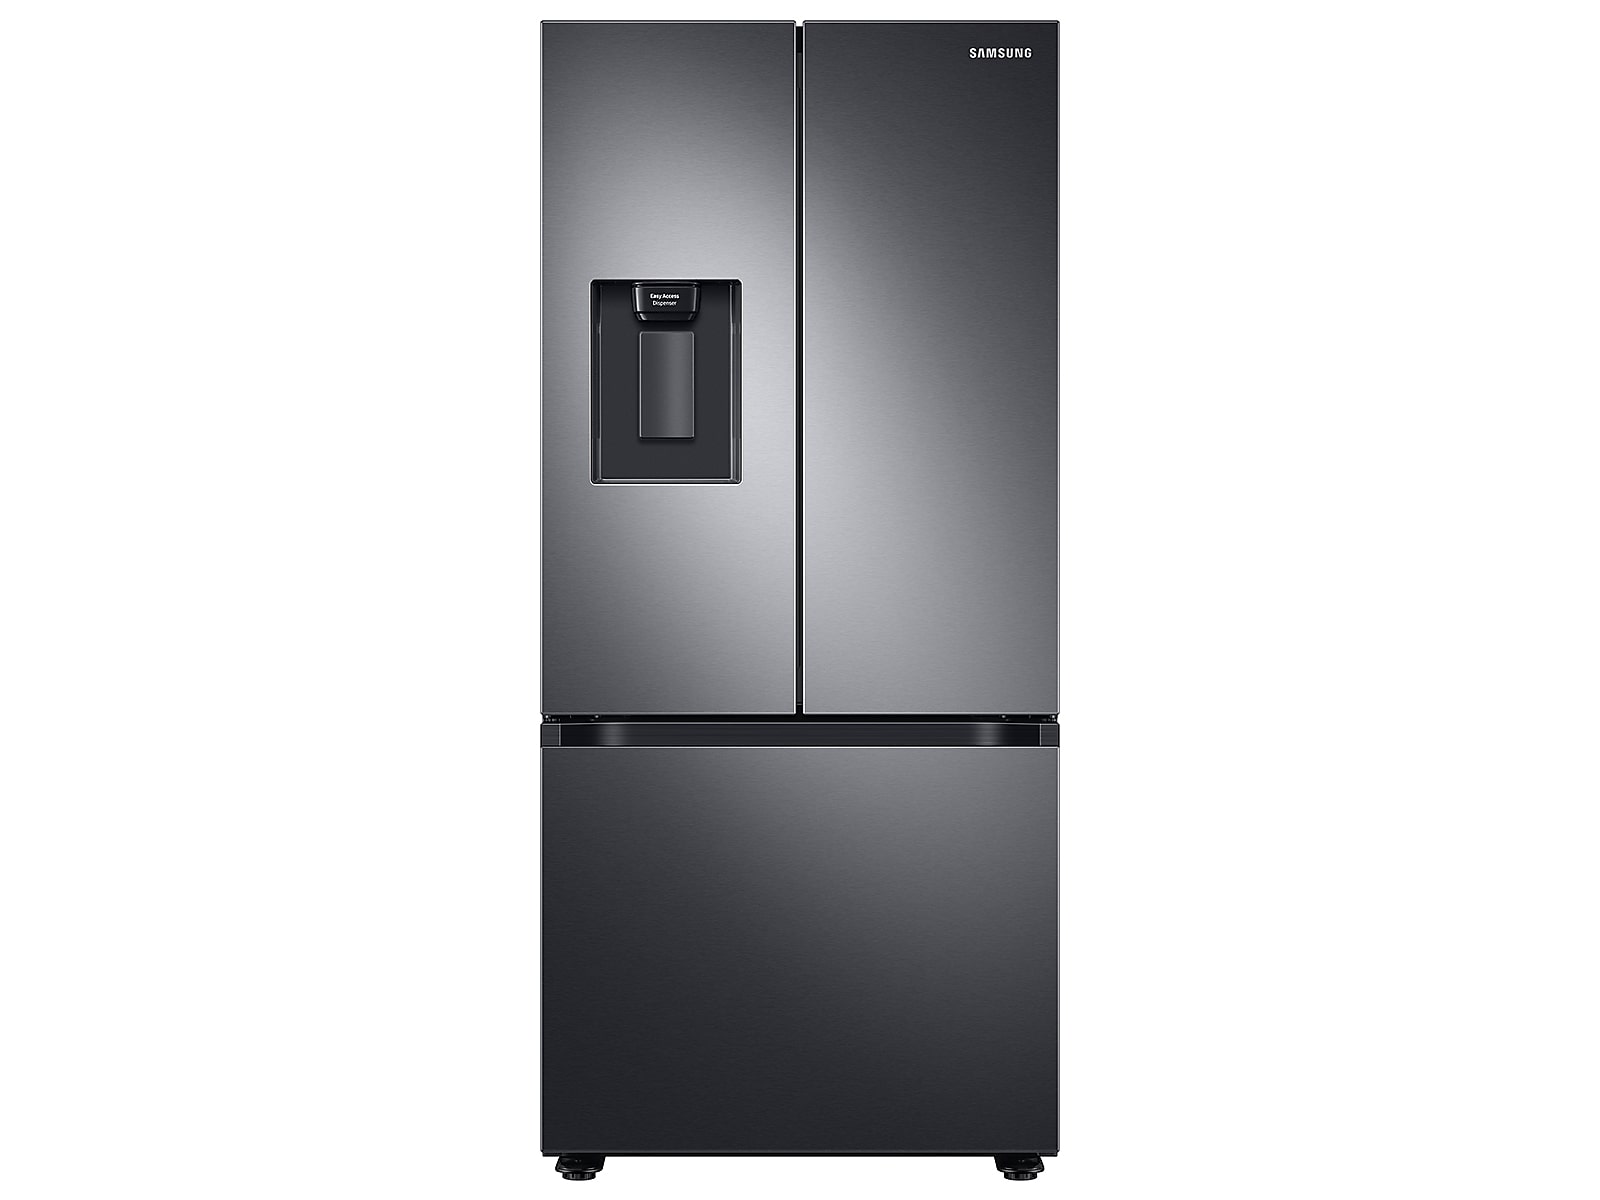 Samsung 22 cu. ft. Smart 3-Door French Door Refrigerator with External Water Dispenser in Fingerprint Resistant in Black Stainless Steel